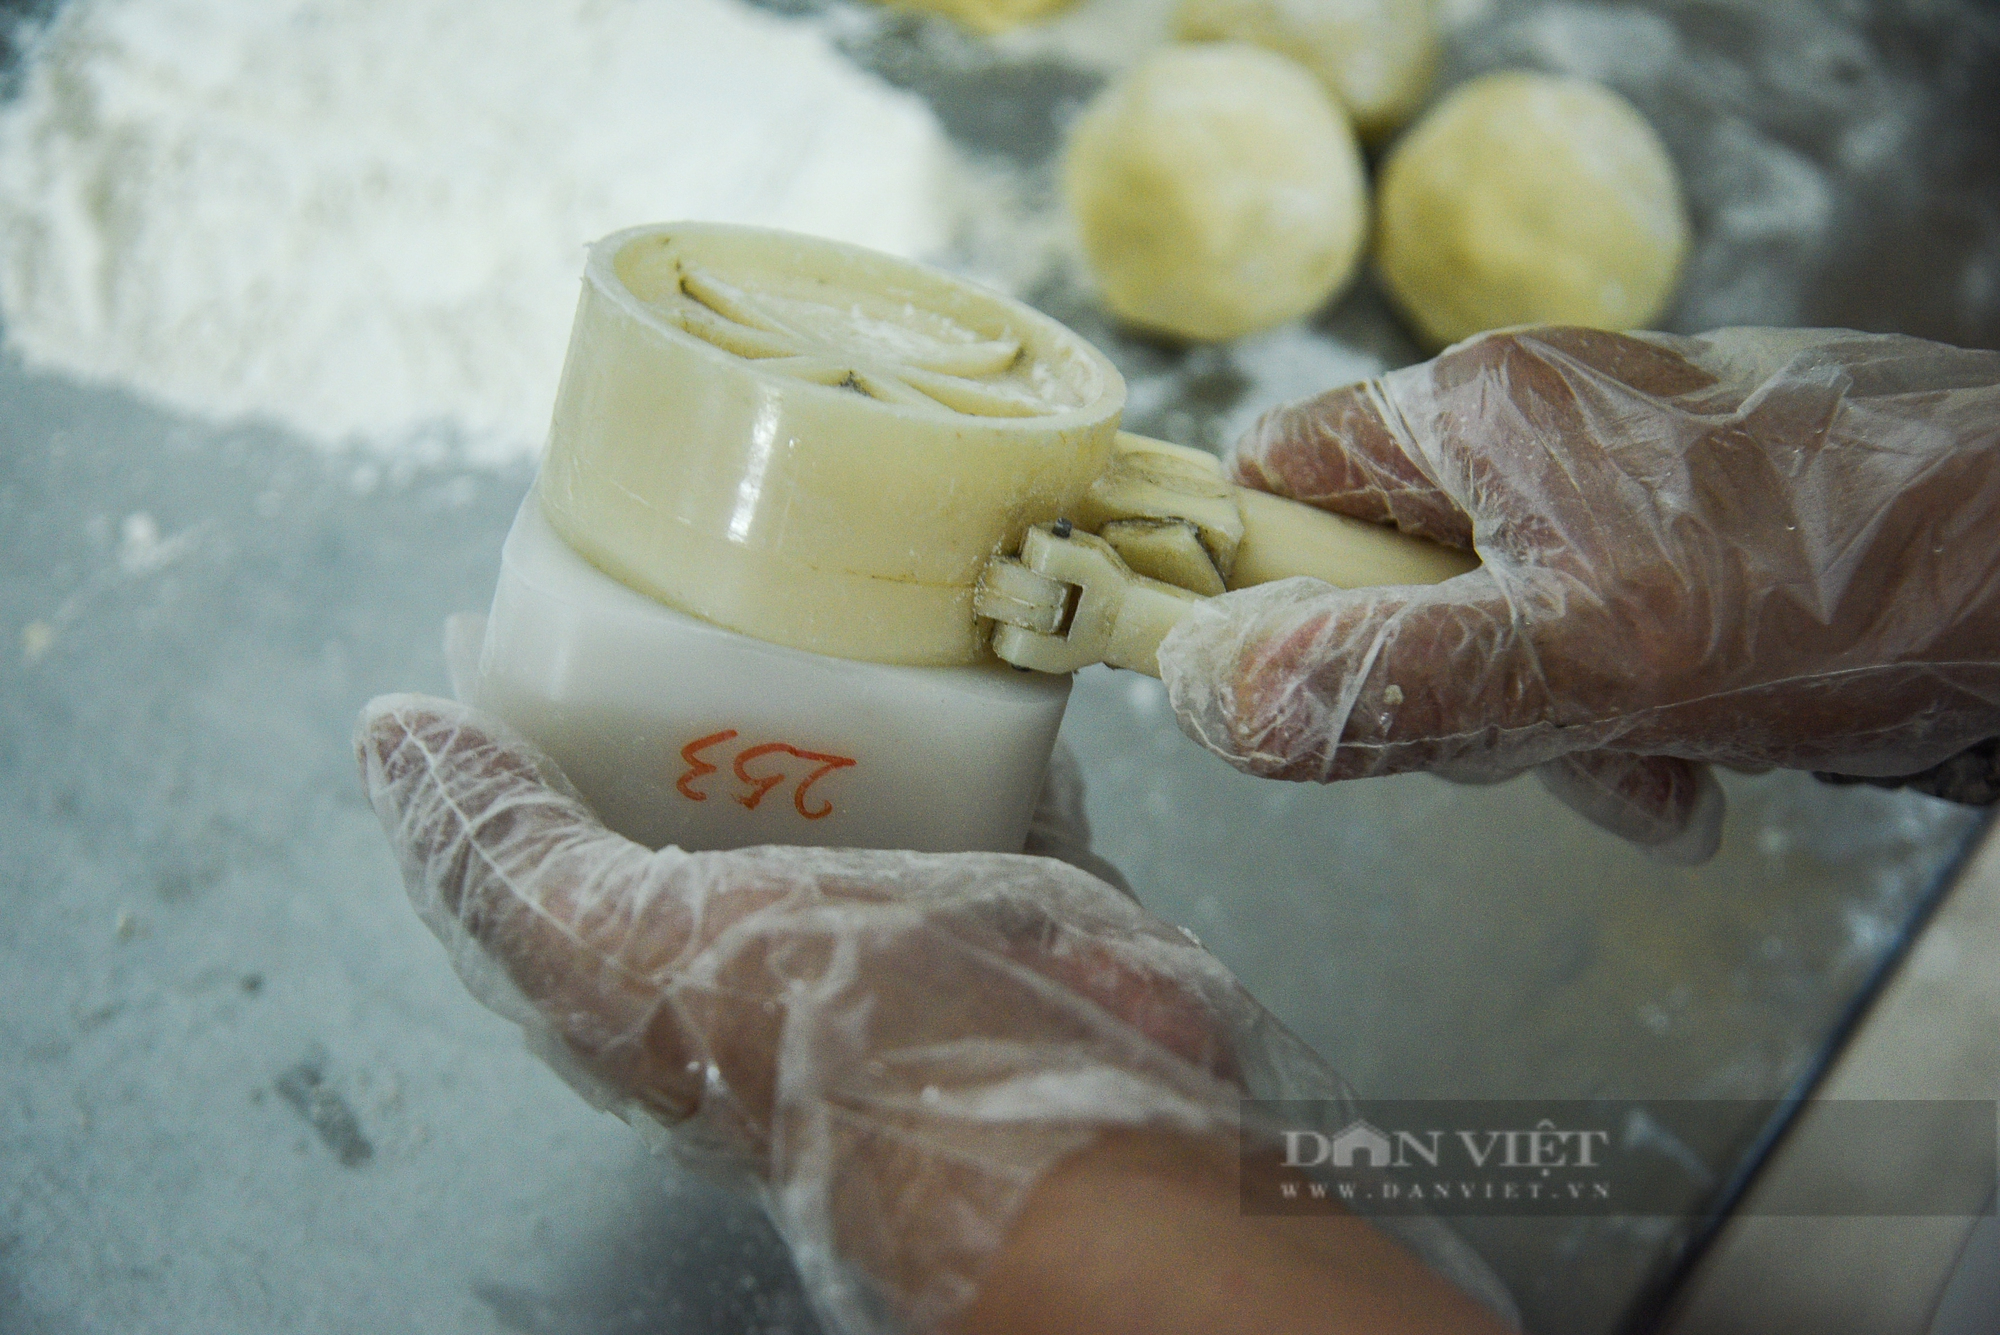 Cận cảnh quy trình sản xuất bánh Trung thu ở một cửa hàng lâu đời tại Hà Nội - Ảnh 7.